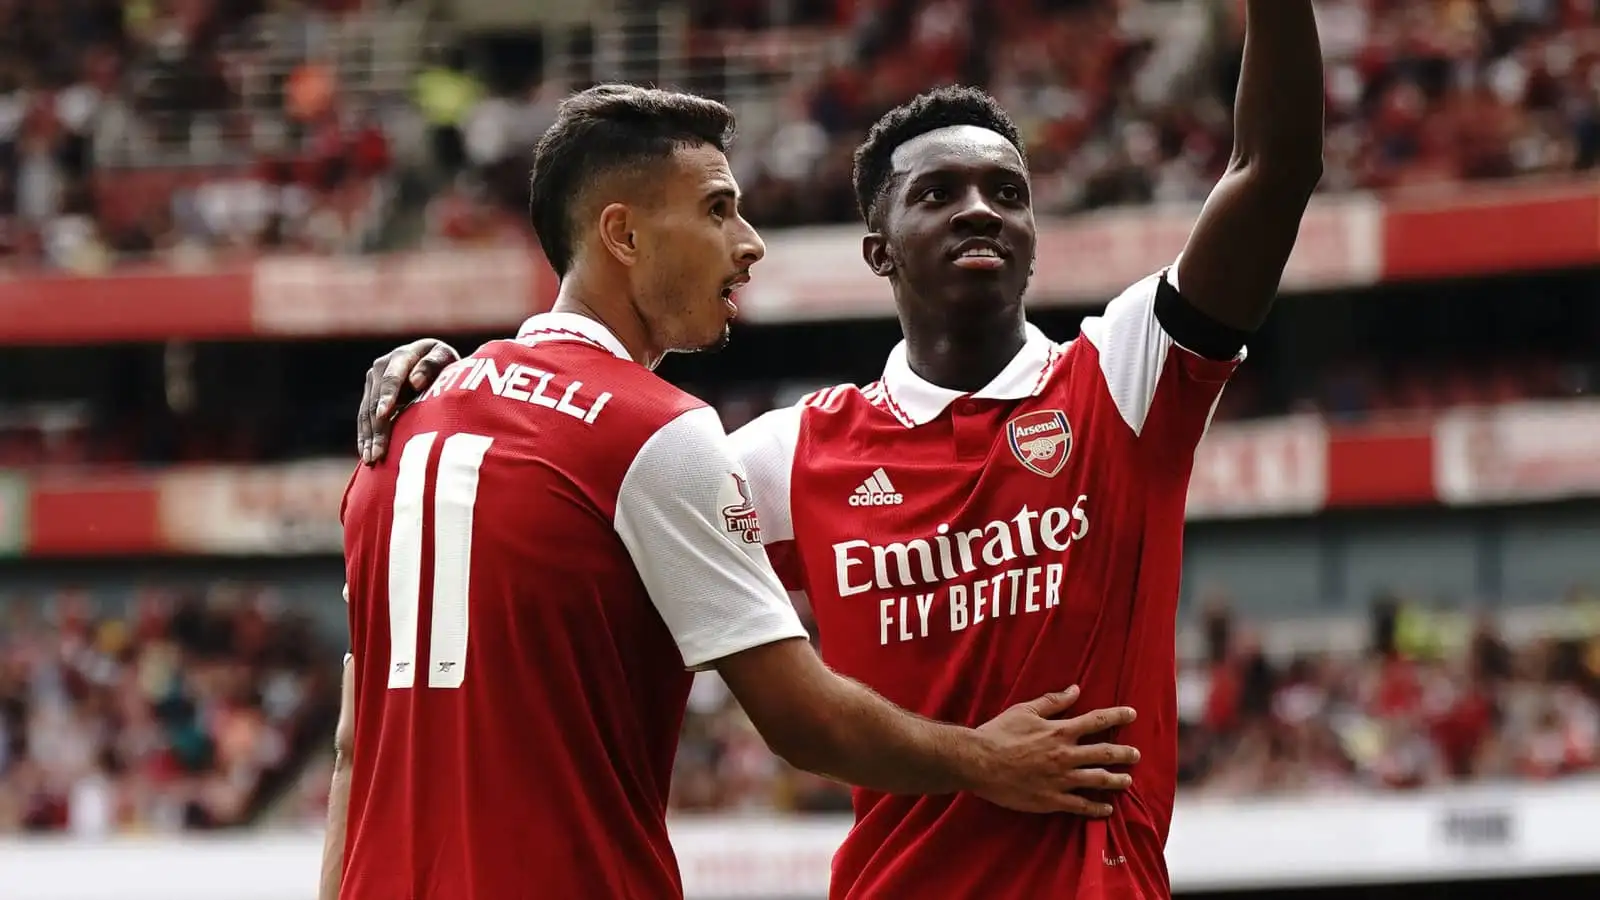 Arsenal forwards Gabriel Martinelli and Eddie Nketiah